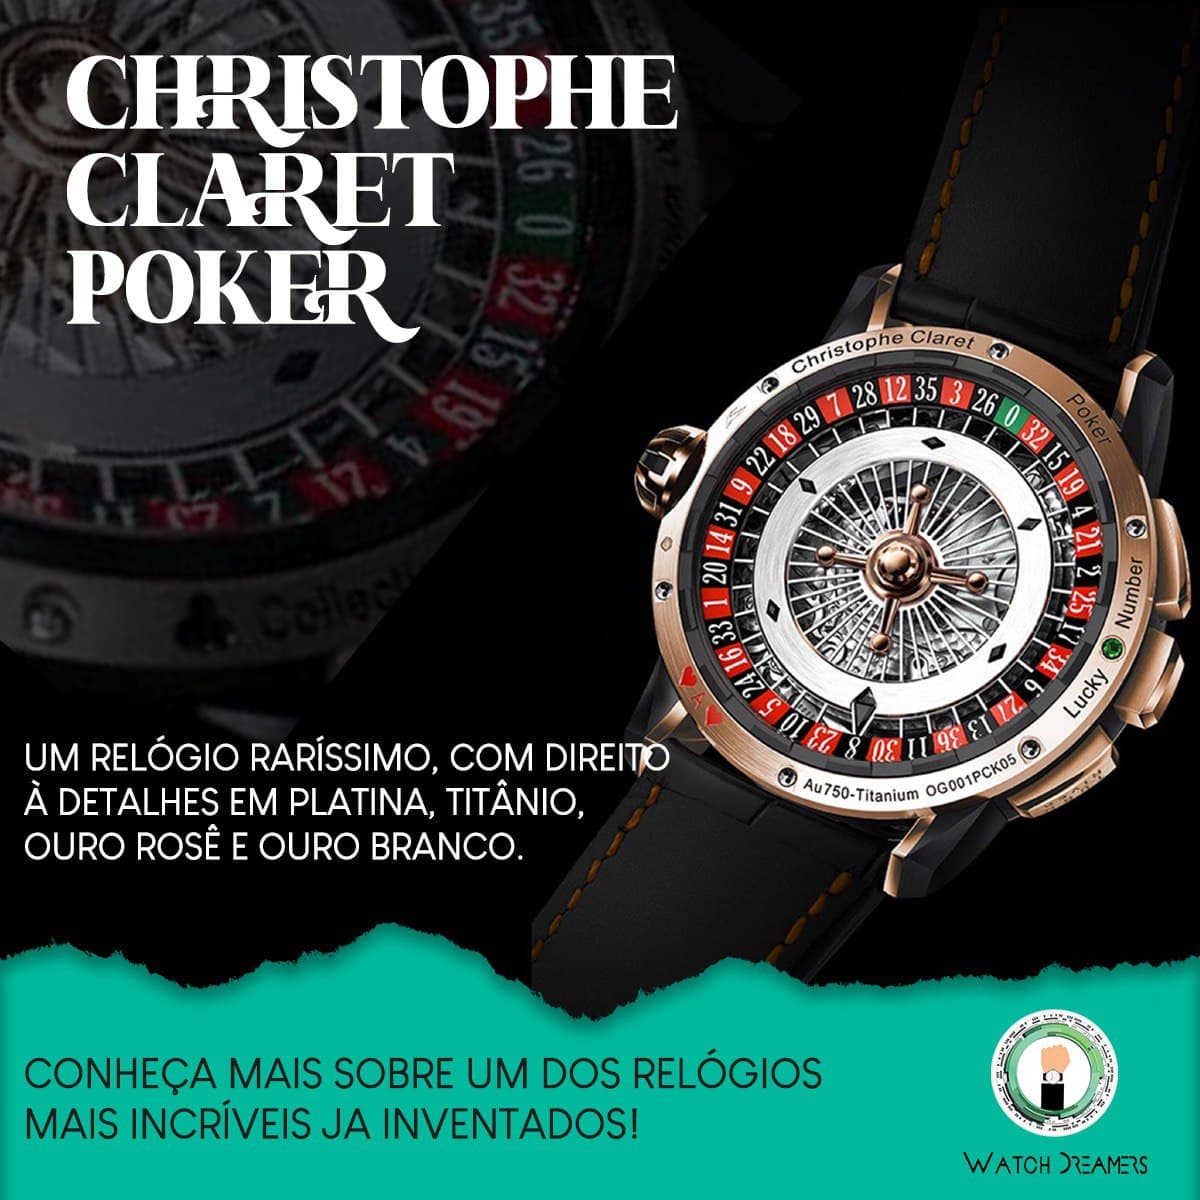 Christophe Claret Poker